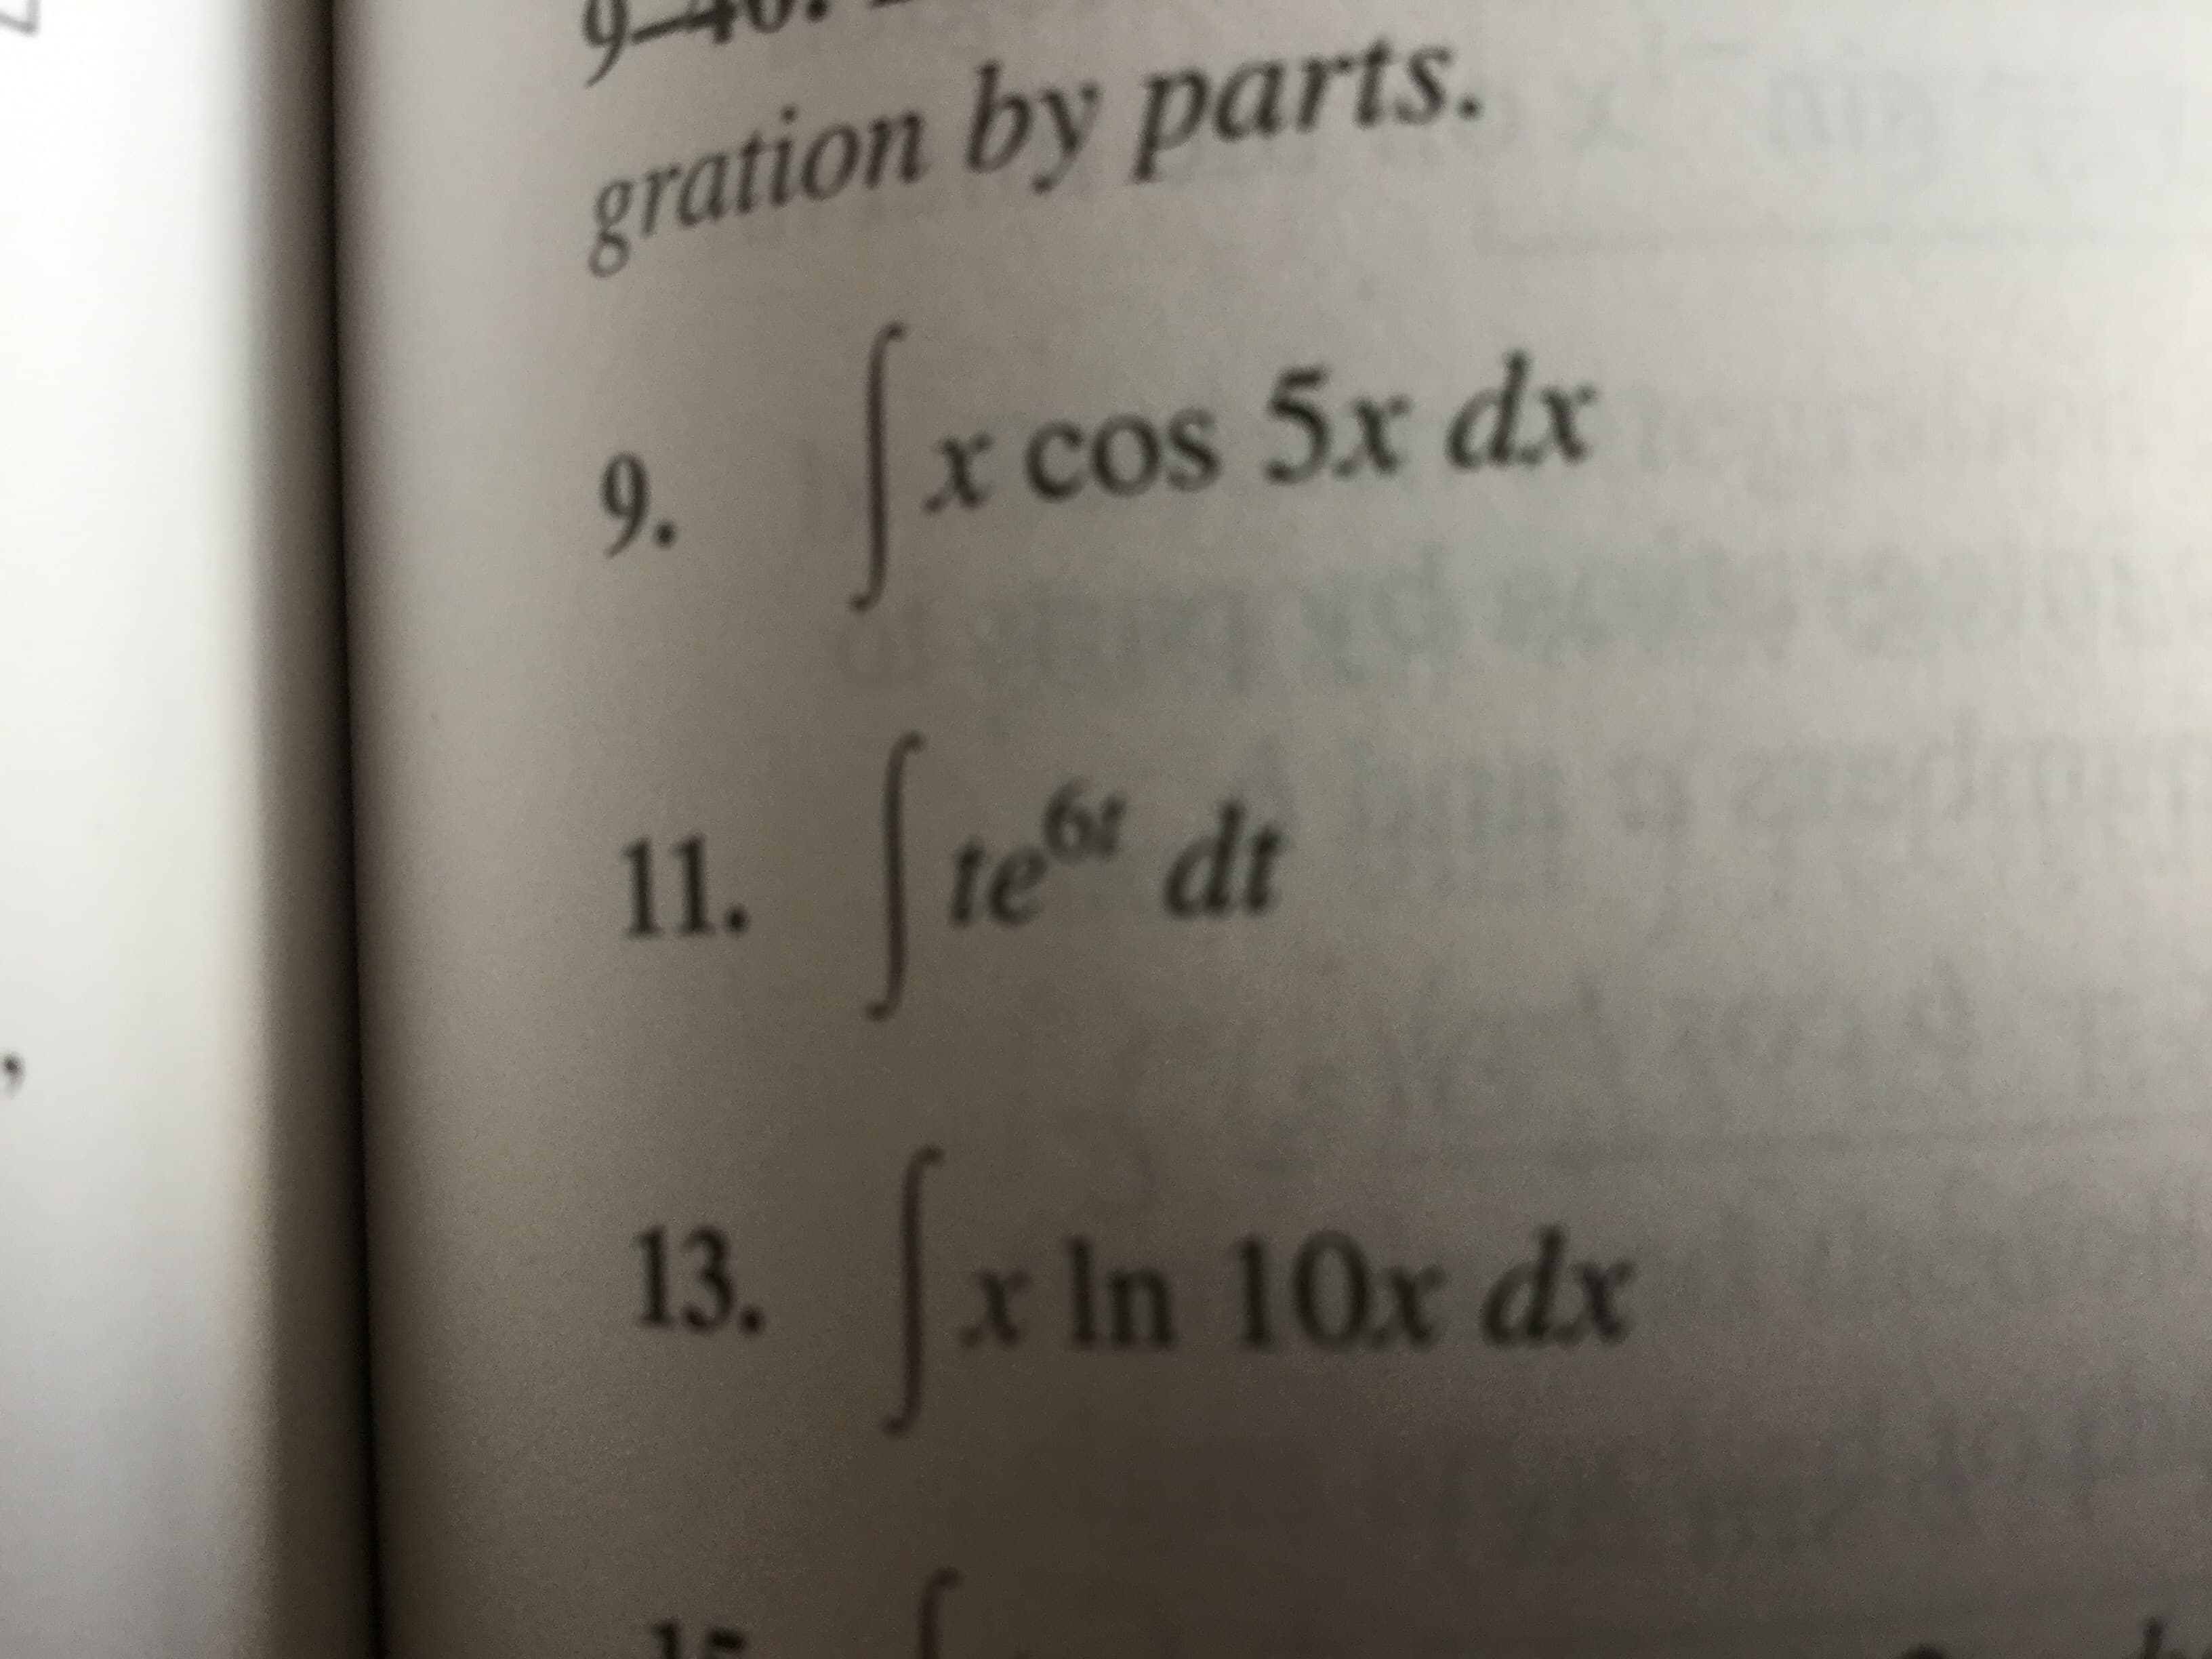 gration by parts.
cos 5x dx
x COS
9.
te dt
11.
13.
x In 10x dx
Dz
